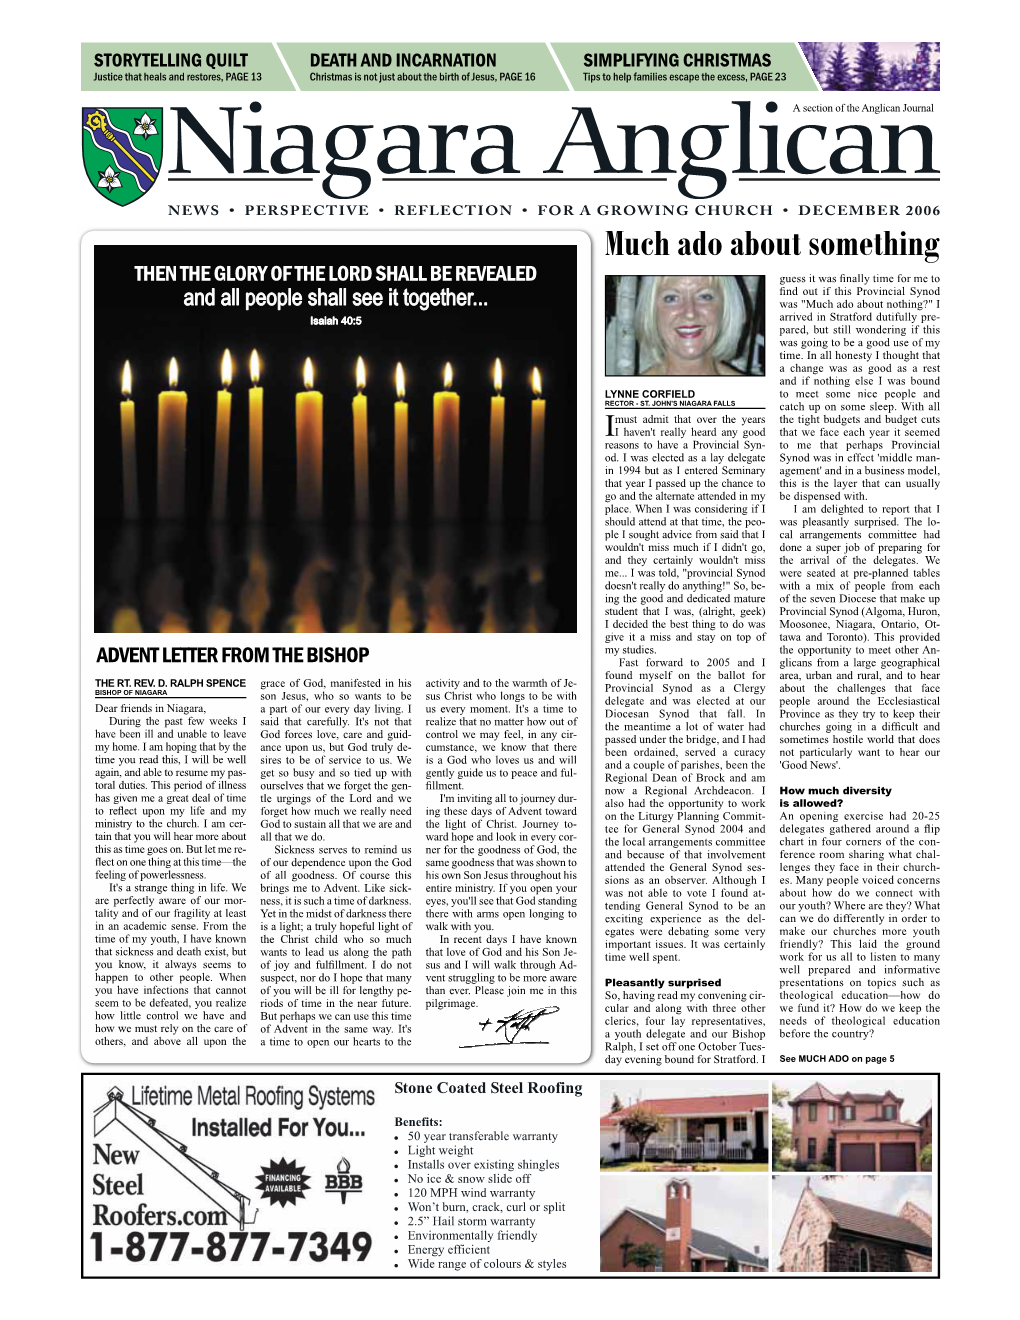 December 2006 Niagara Anglican - December 2006